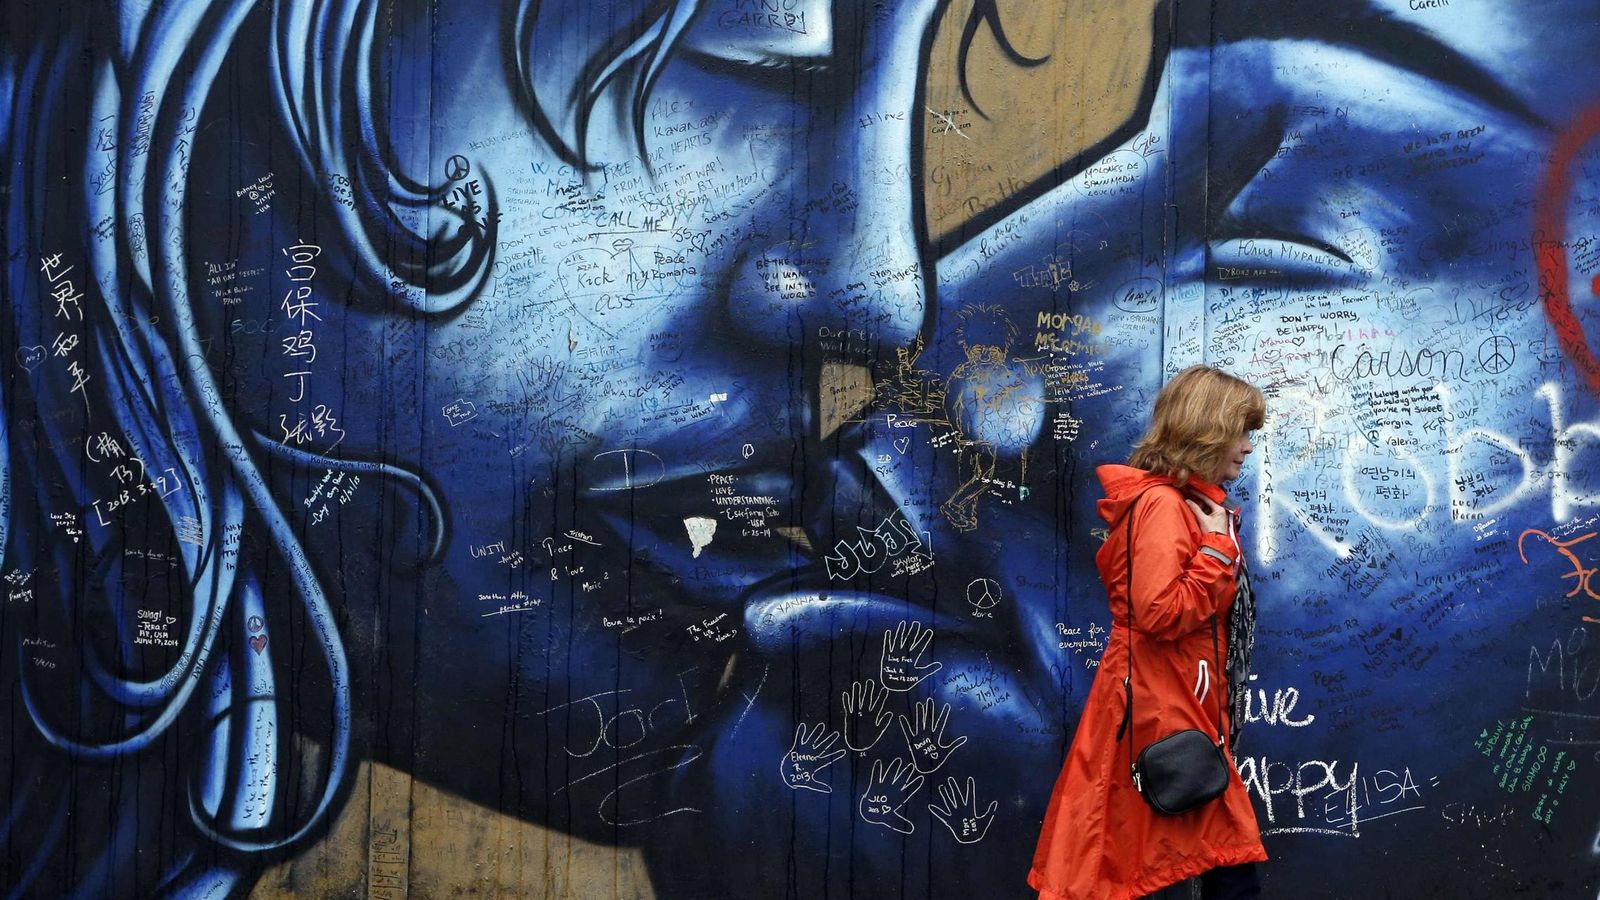 Una turista camina frente a un 'muro de la paz' en Irlanda del Norte. (Reuters)